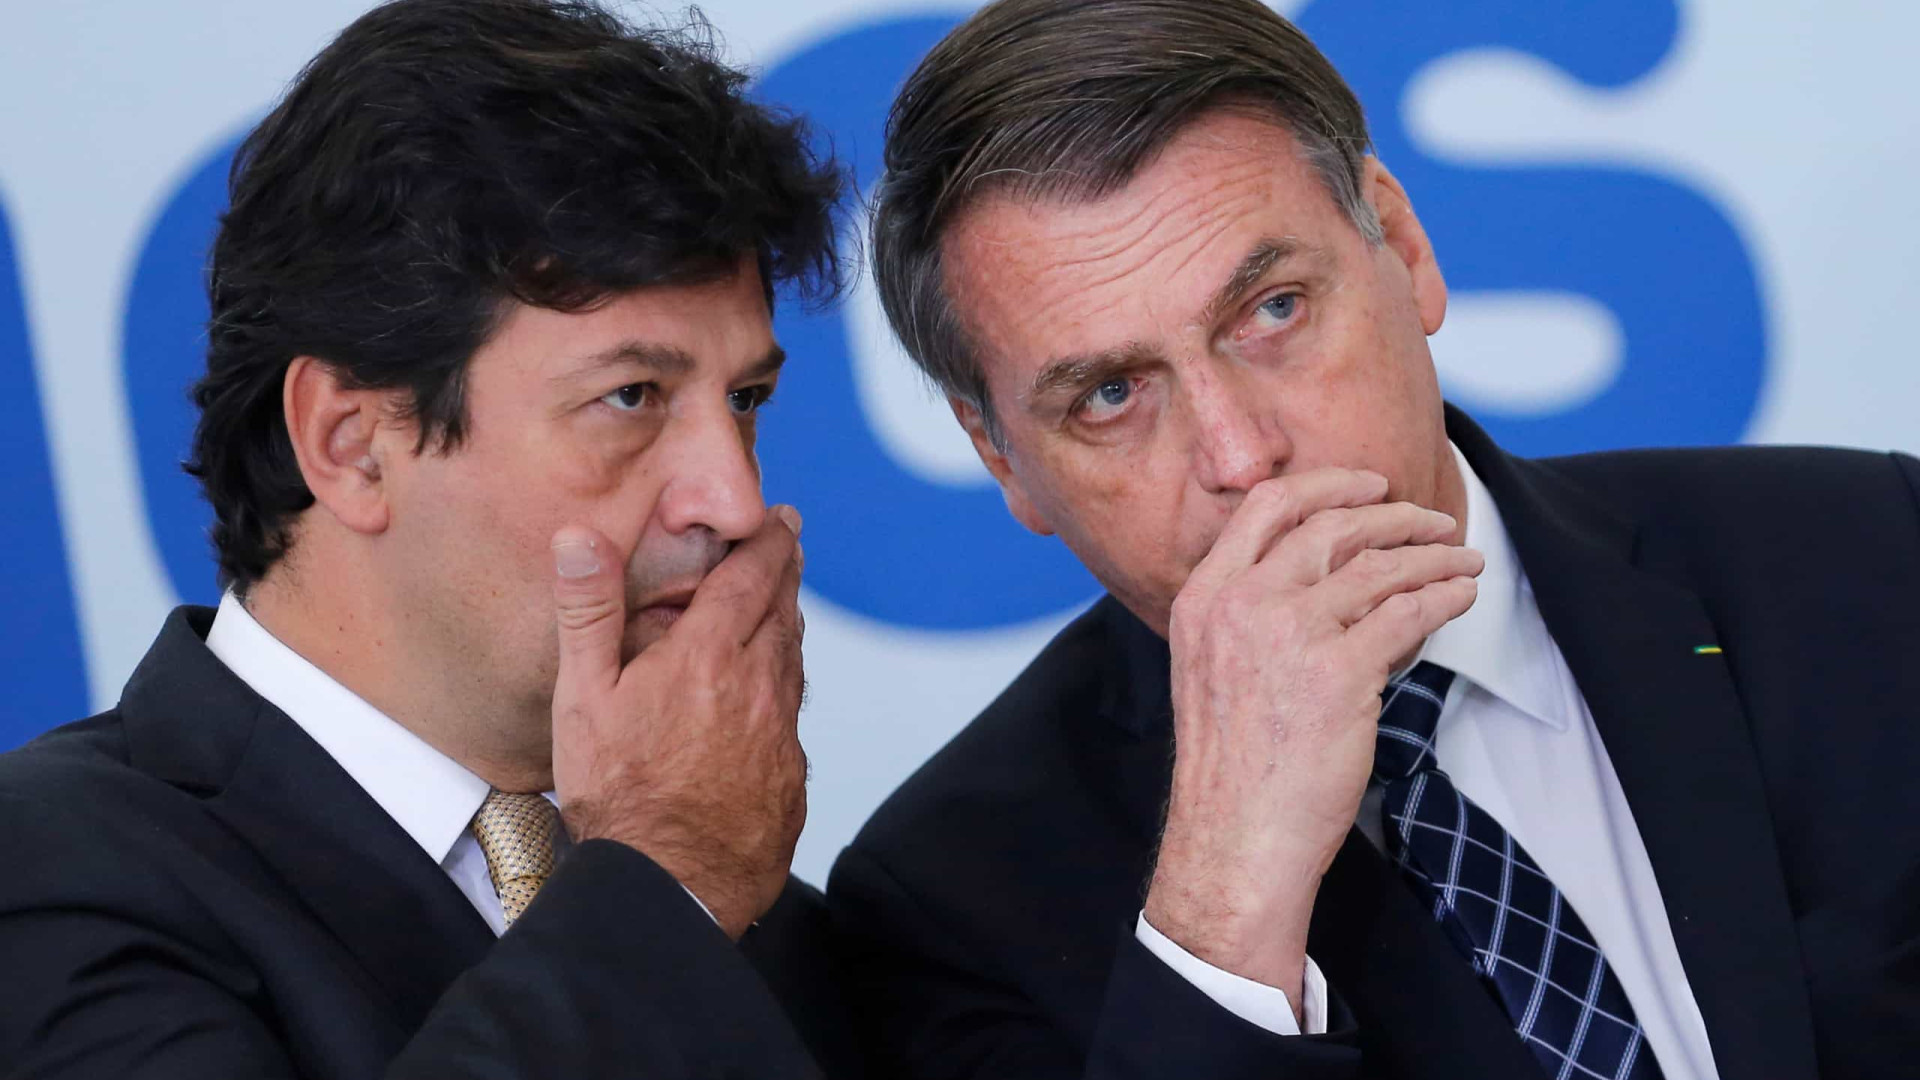 Eleitor de Bolsonaro acha que Min. da Saúde atua melhor que Presidente